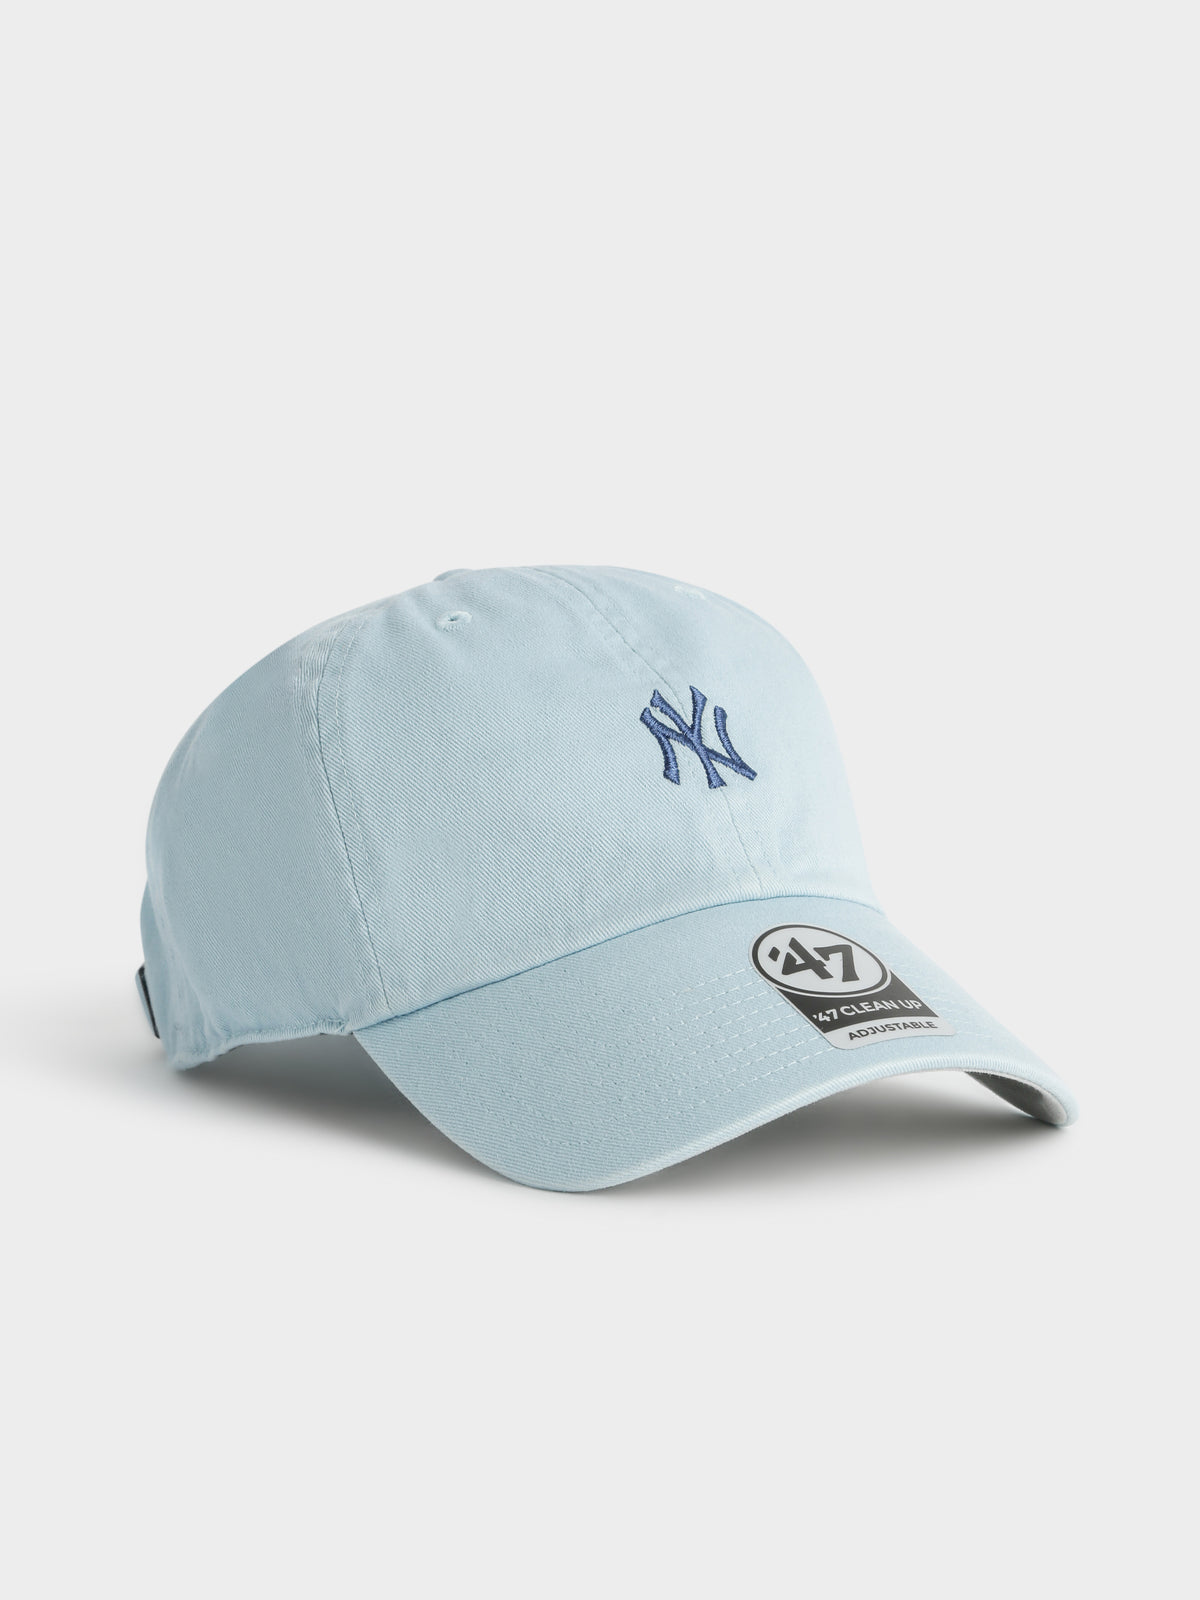 NY Yankees Baseball Cap in Baby Blue